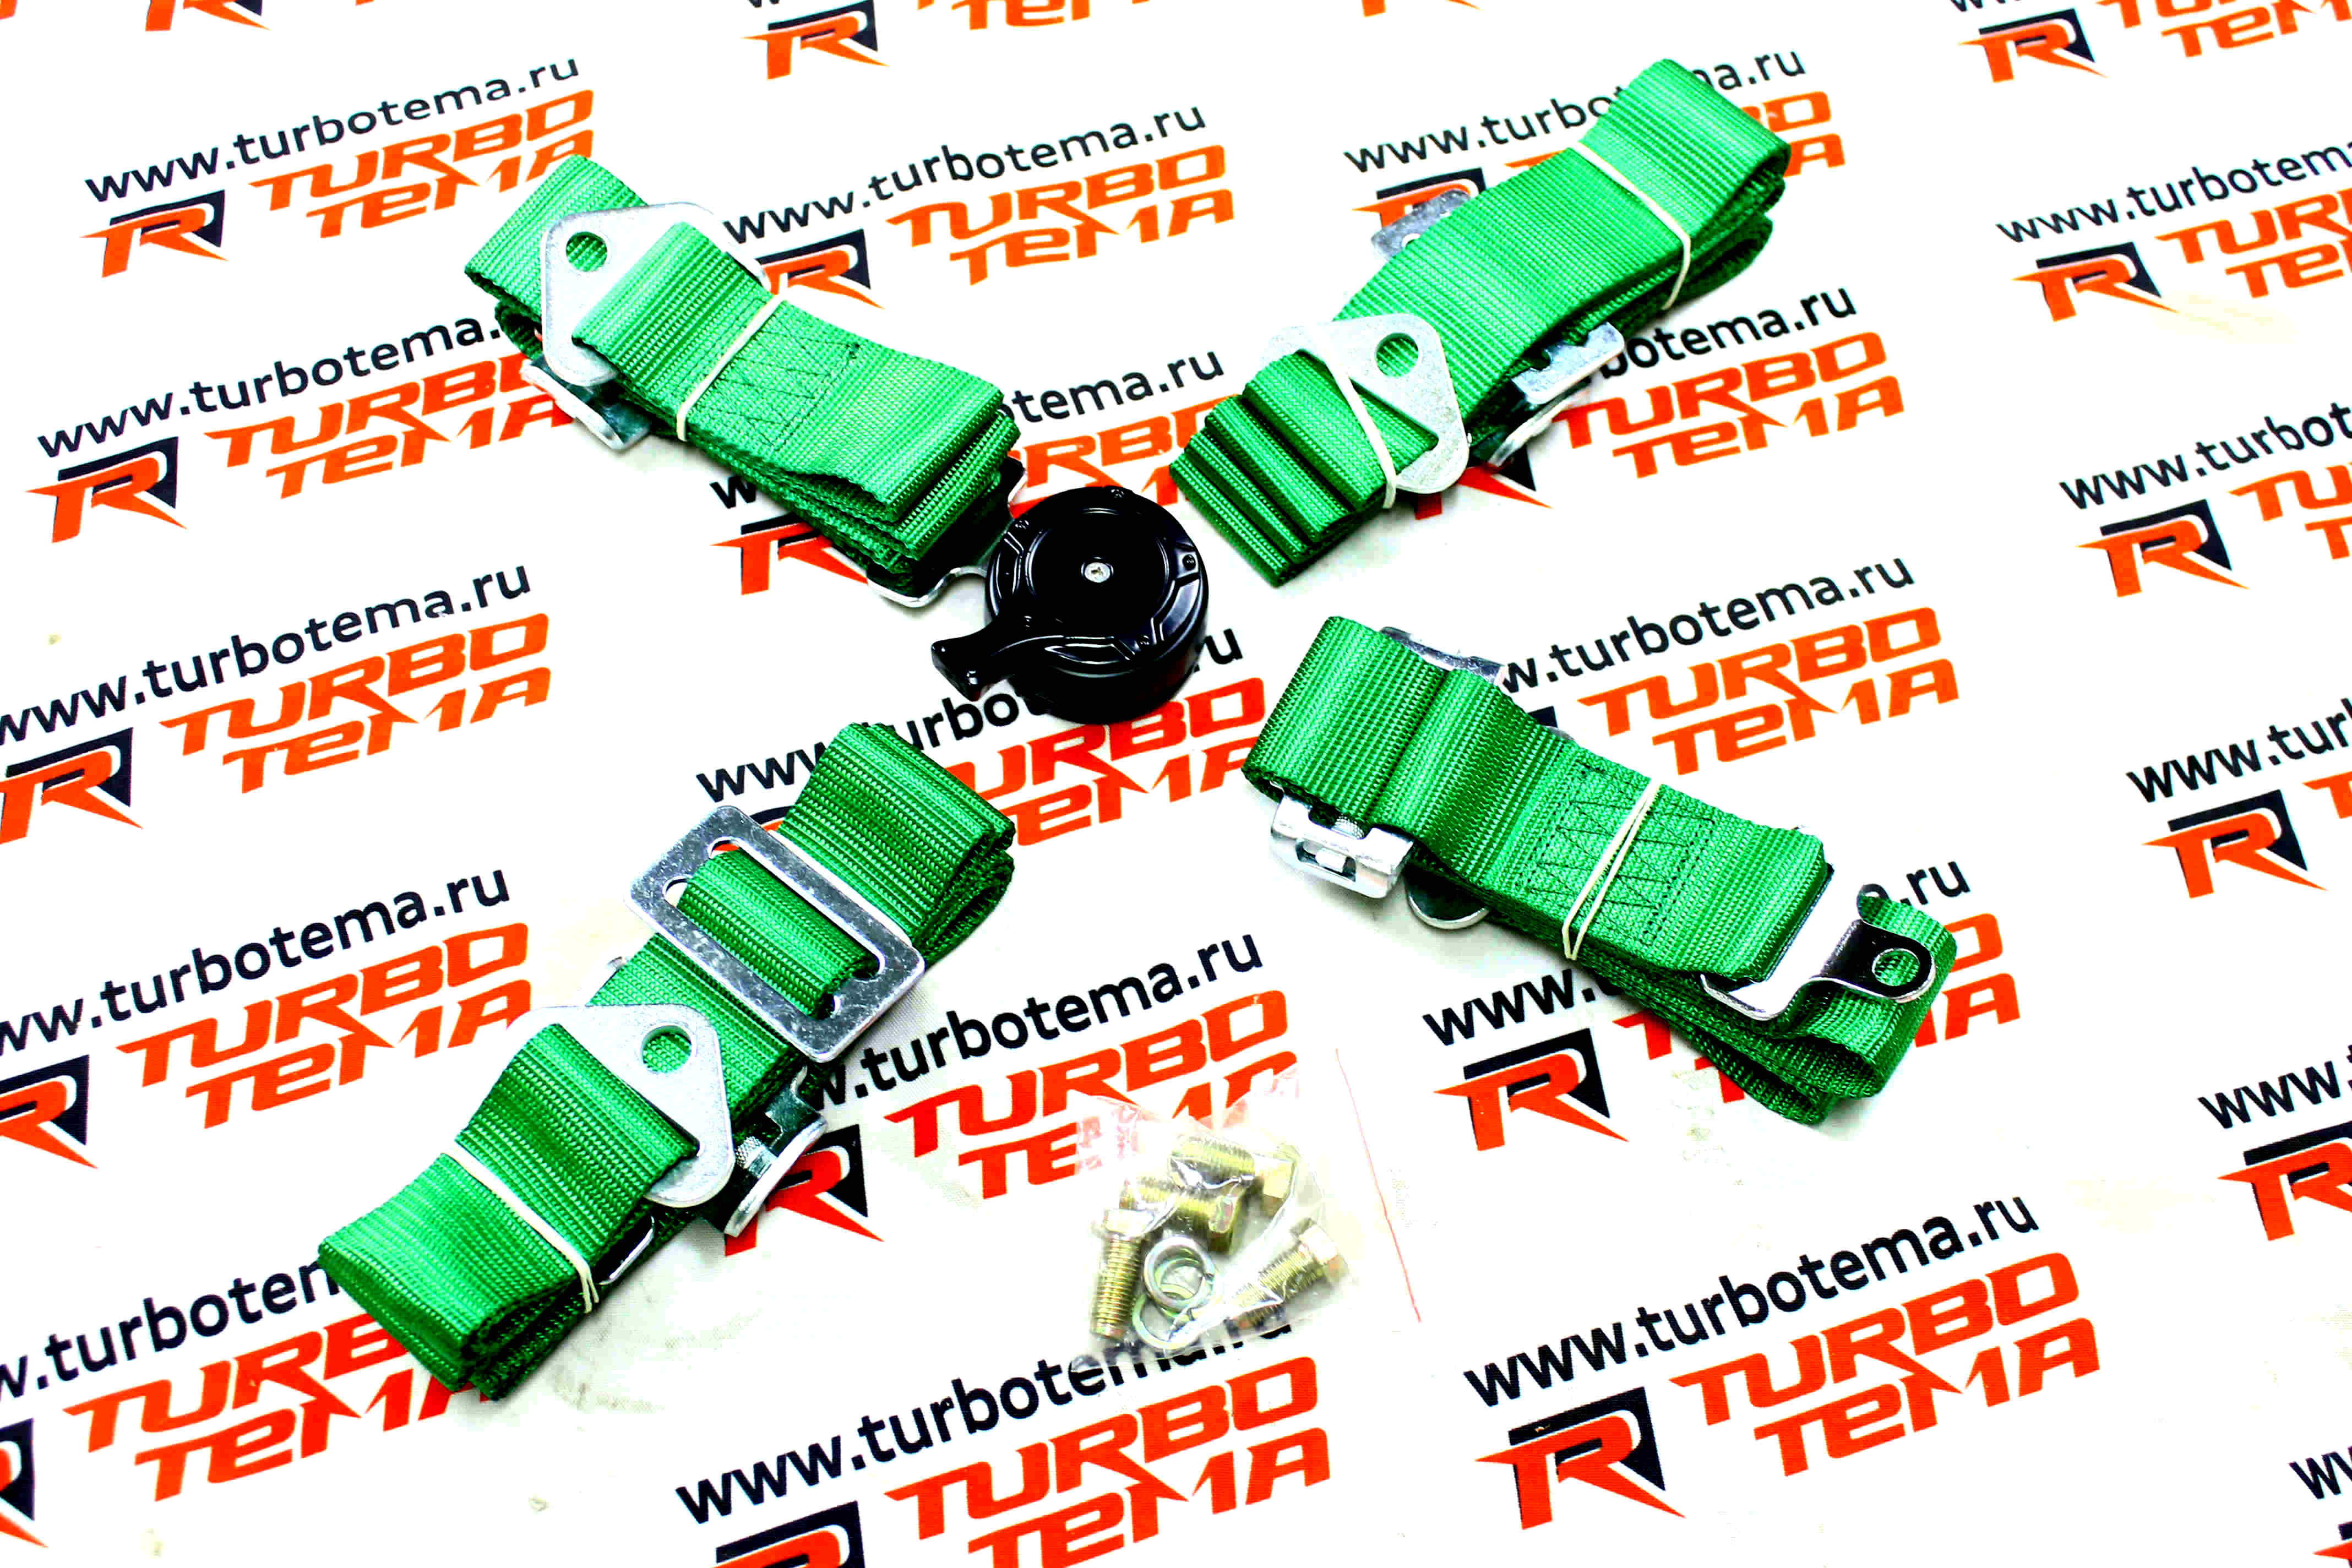 Ремни безопасности "TURBOTEMA" 4-х точечные, 2" ширина, быстросъемные (зеленые) JBR4001-4. Фото �2